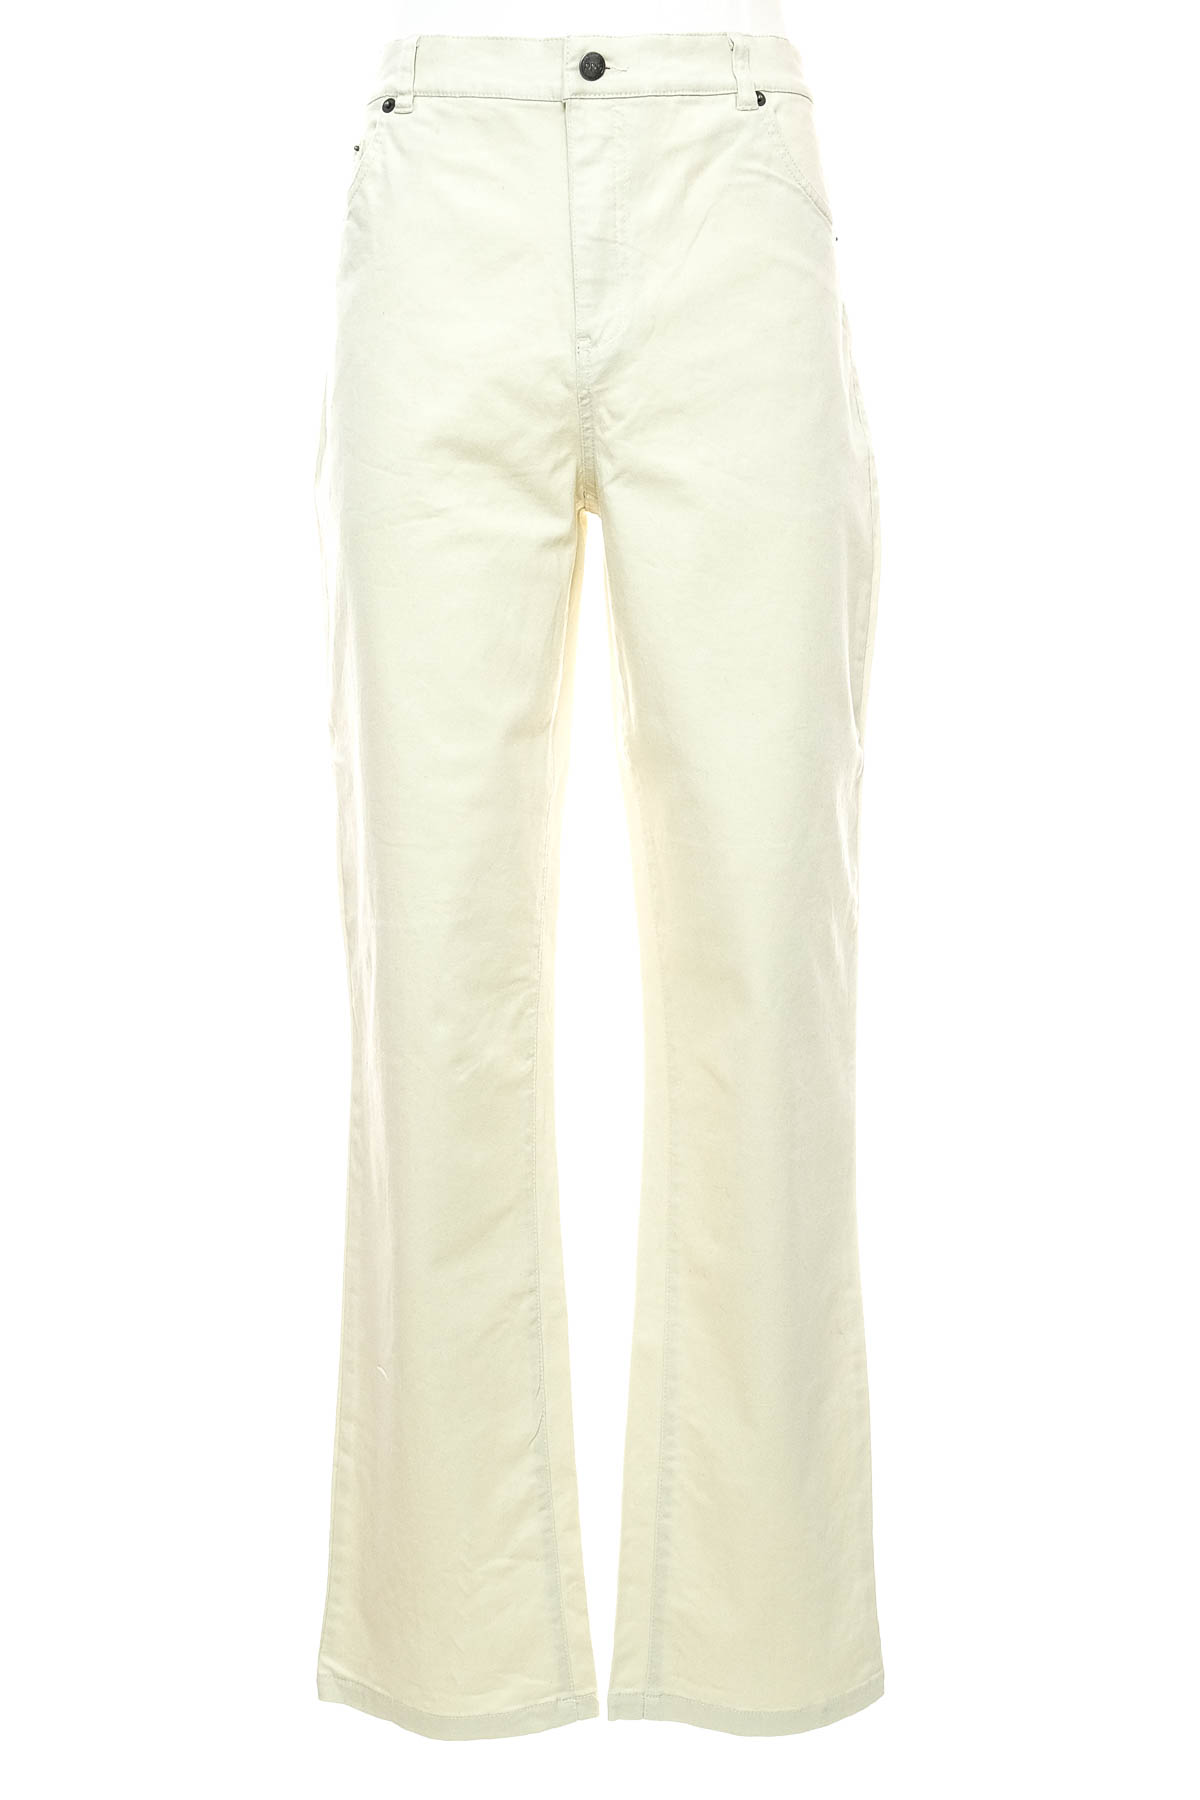 Men's jeans - Bpc Bonprix Collection - 0